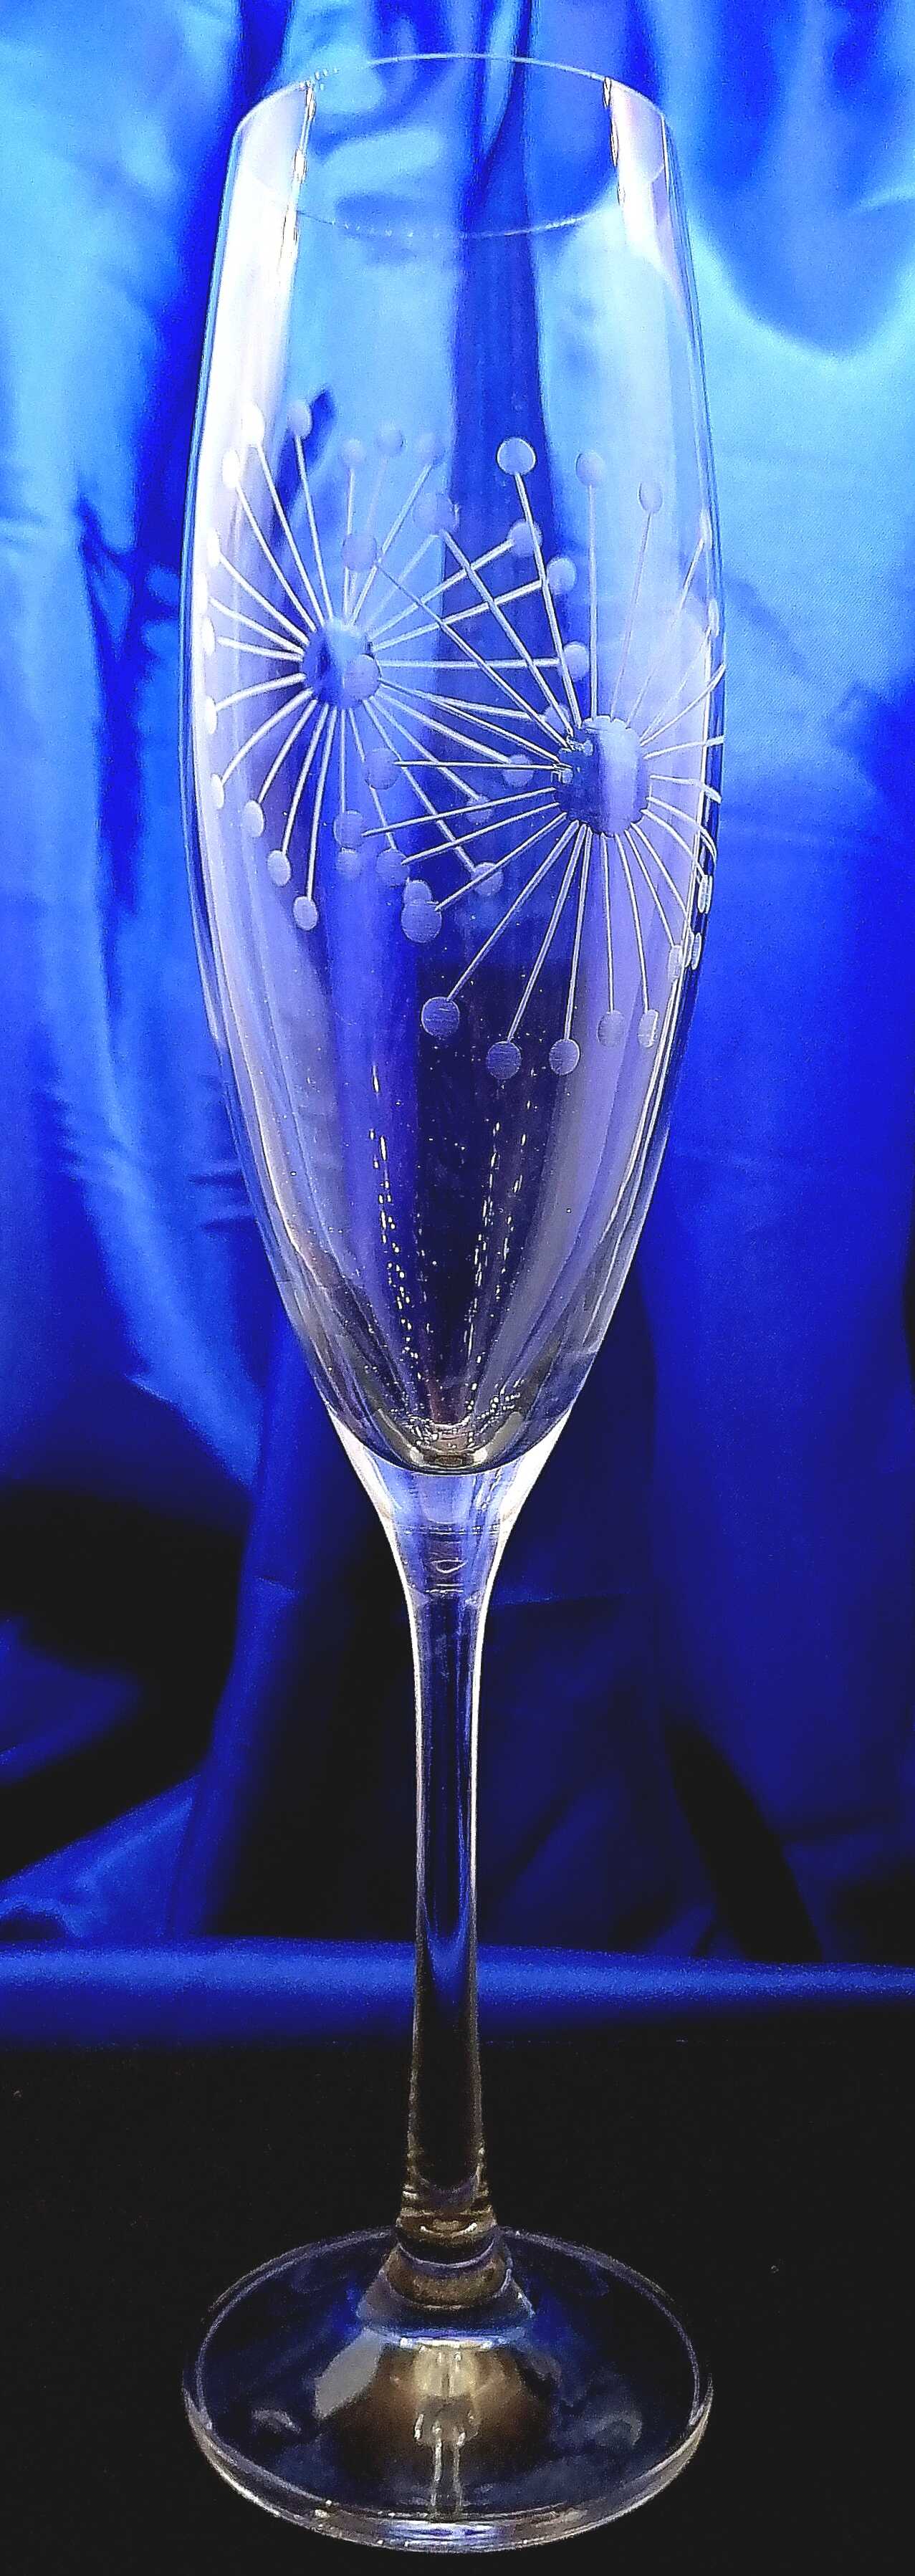 Sektkelch/ Champagner Glas/ Sektgläser Hand geschliffen Muster Lőwenzahn 076.190 ml 2 Stück.